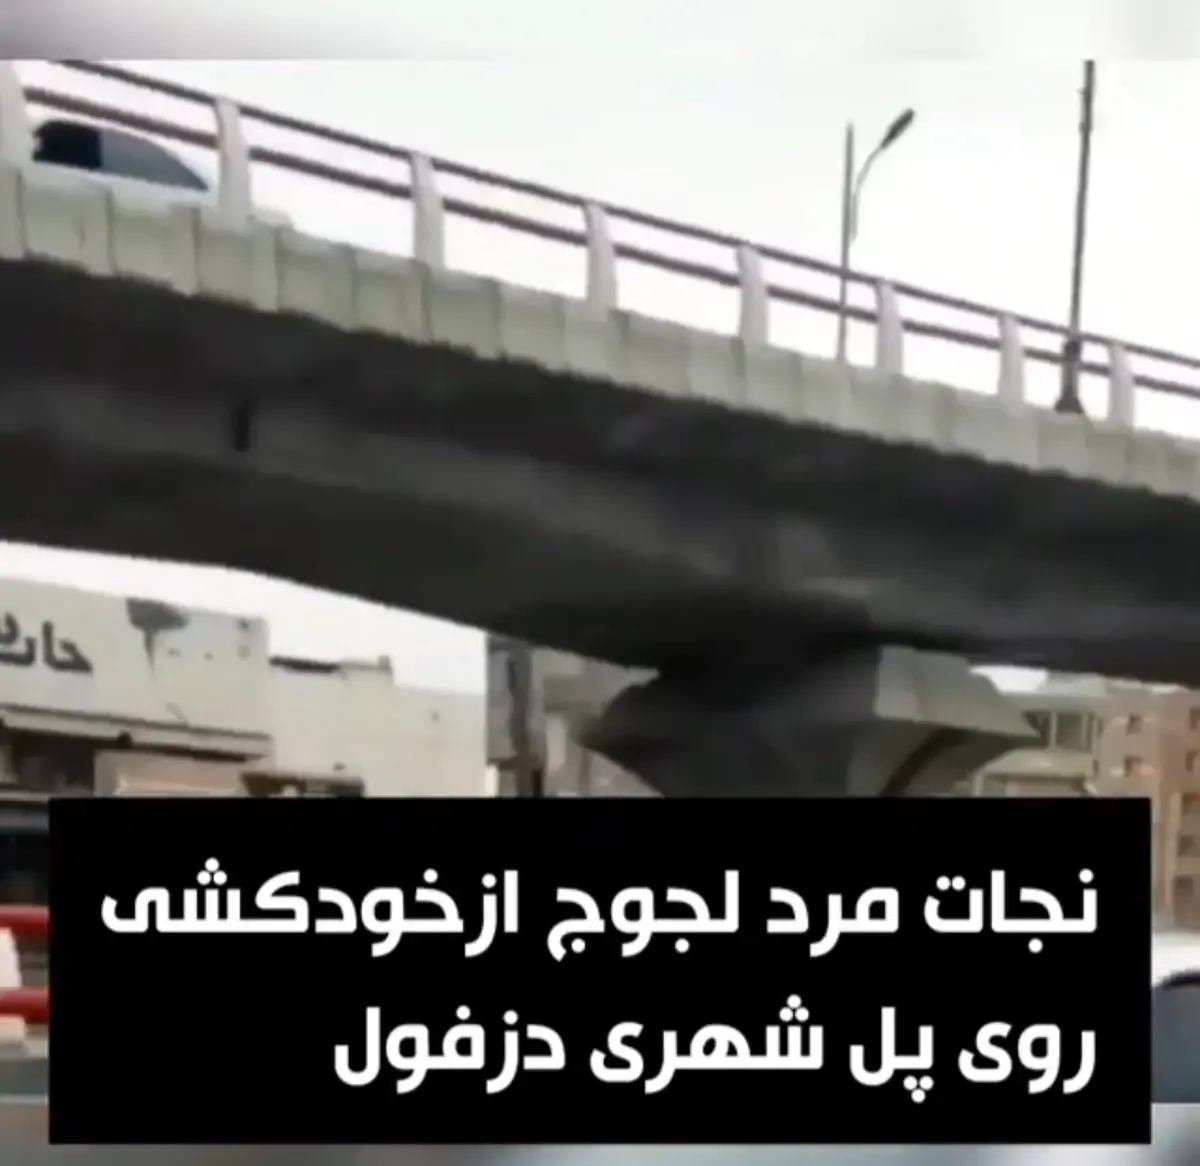 نجات مرد جوان از خودکشی در دزفول خوزستان + ویدئو